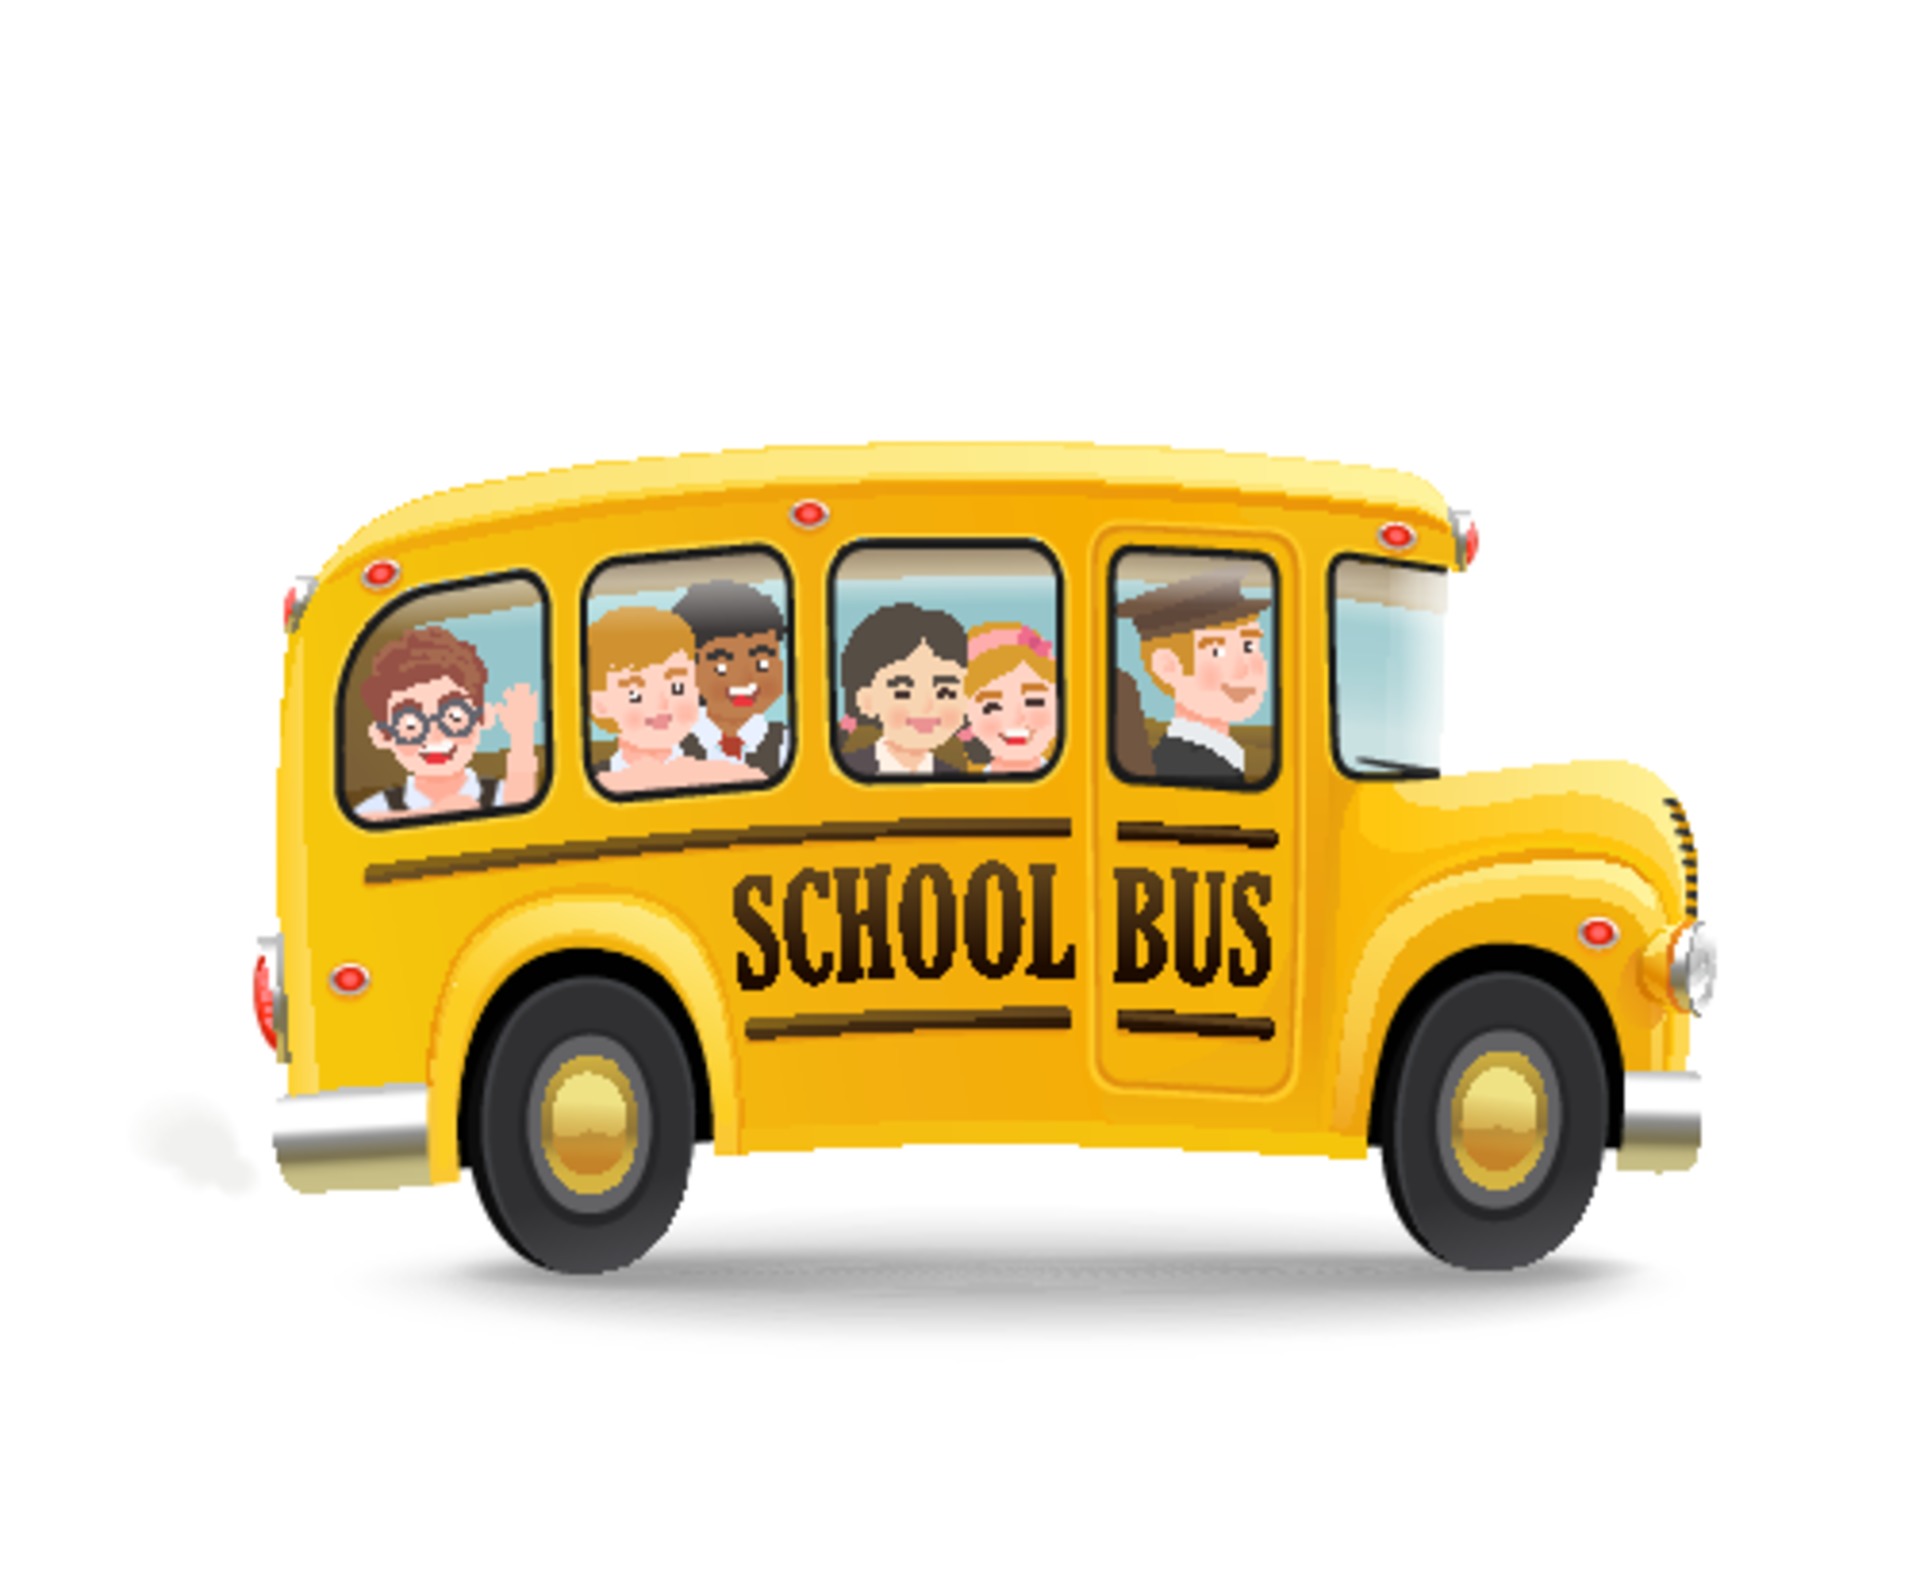 Cartoon school bus with children 2373903 Vector Art at Vecteezy